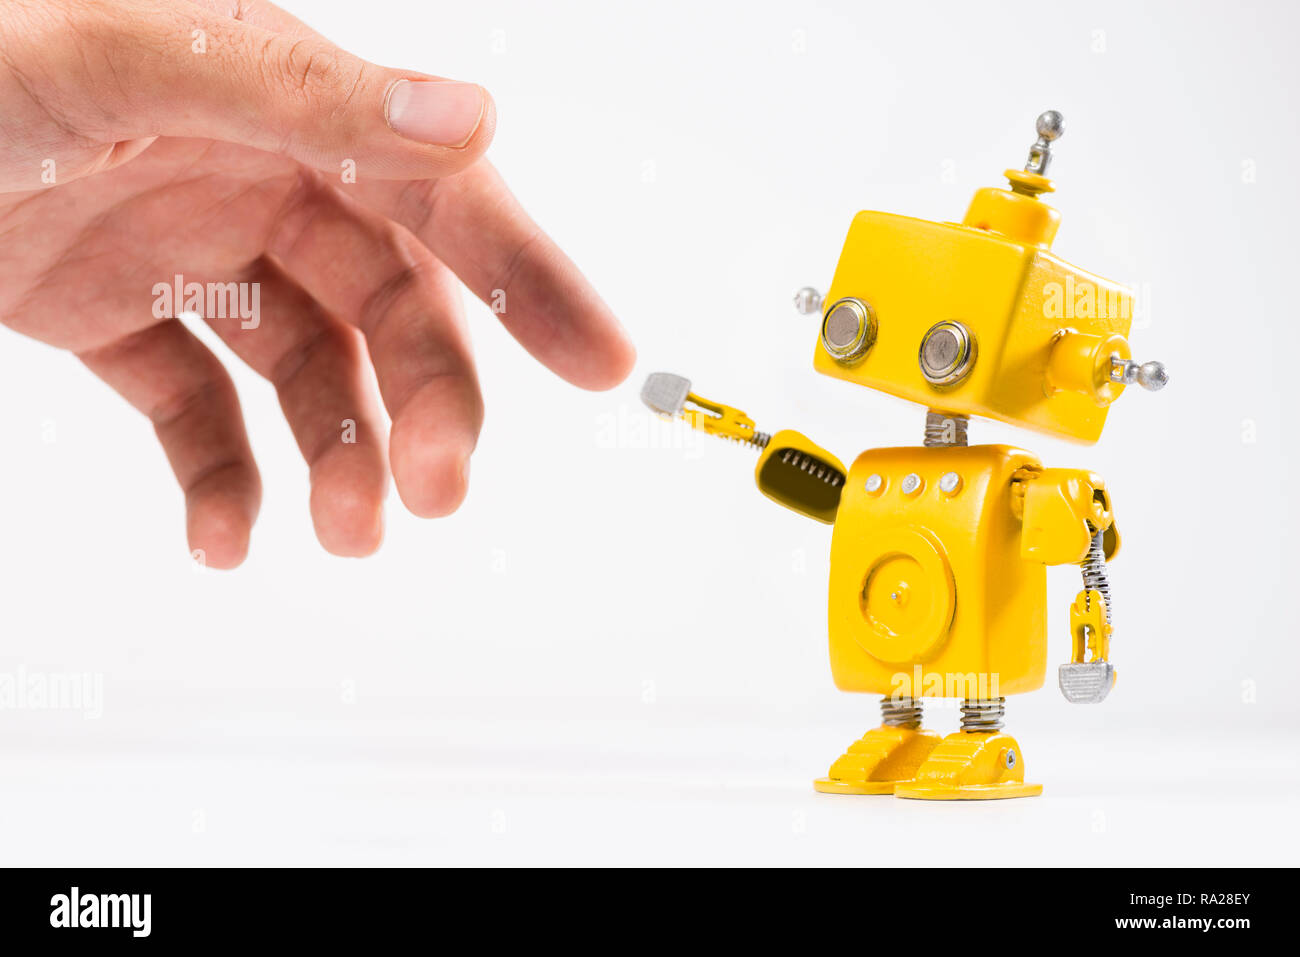 Niedlich, Gelb, handgefertigte Roboter mit einer menschlichen Hand auf einem weißen Hintergrund. Wie die Erschaffung des Adam Gemälde von Michelangelo. Stockfoto